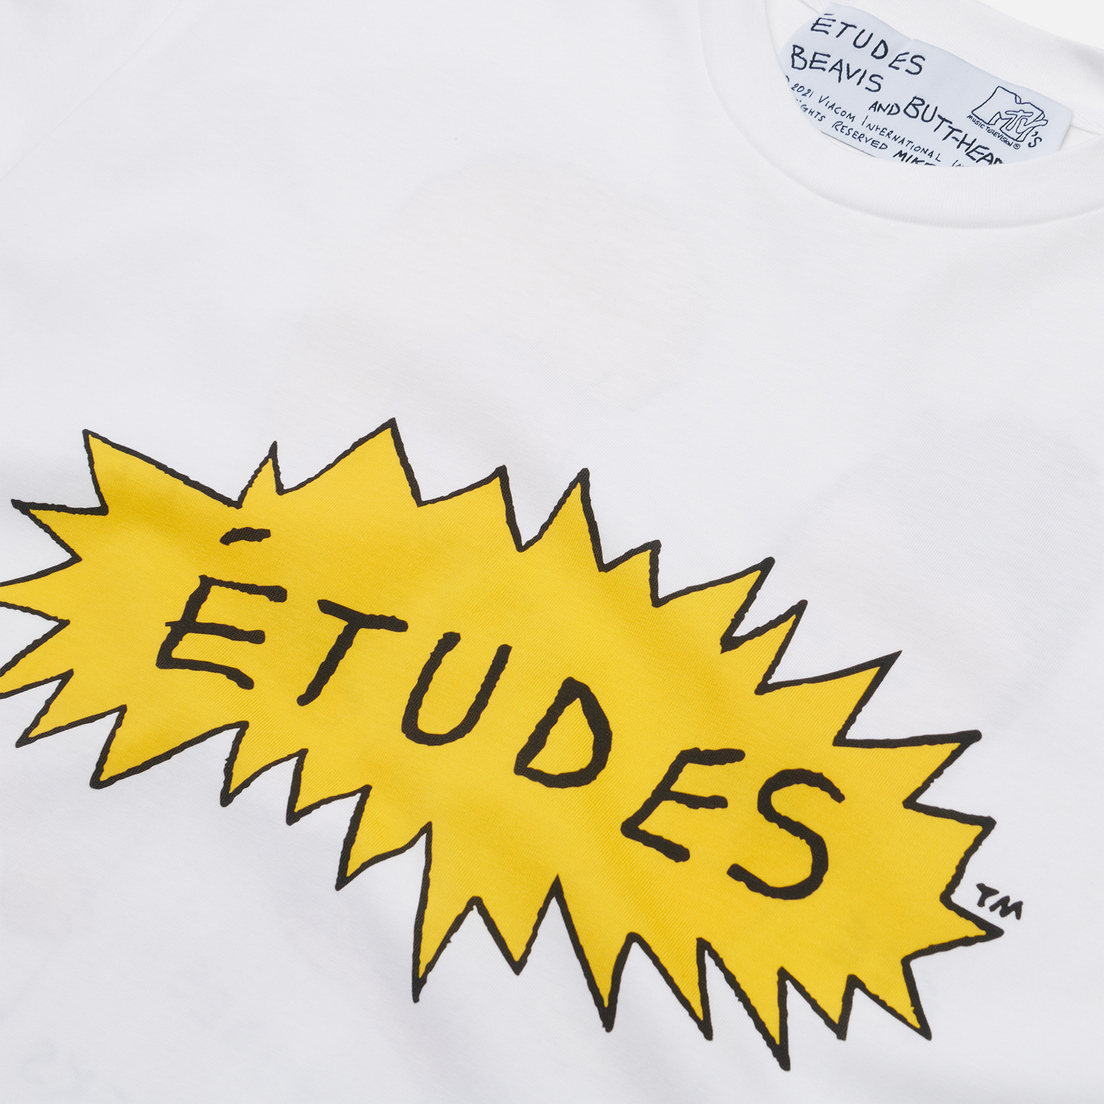 Etudes Мужская футболка x Beavis & Butt-Head Wonder Etudes Angry